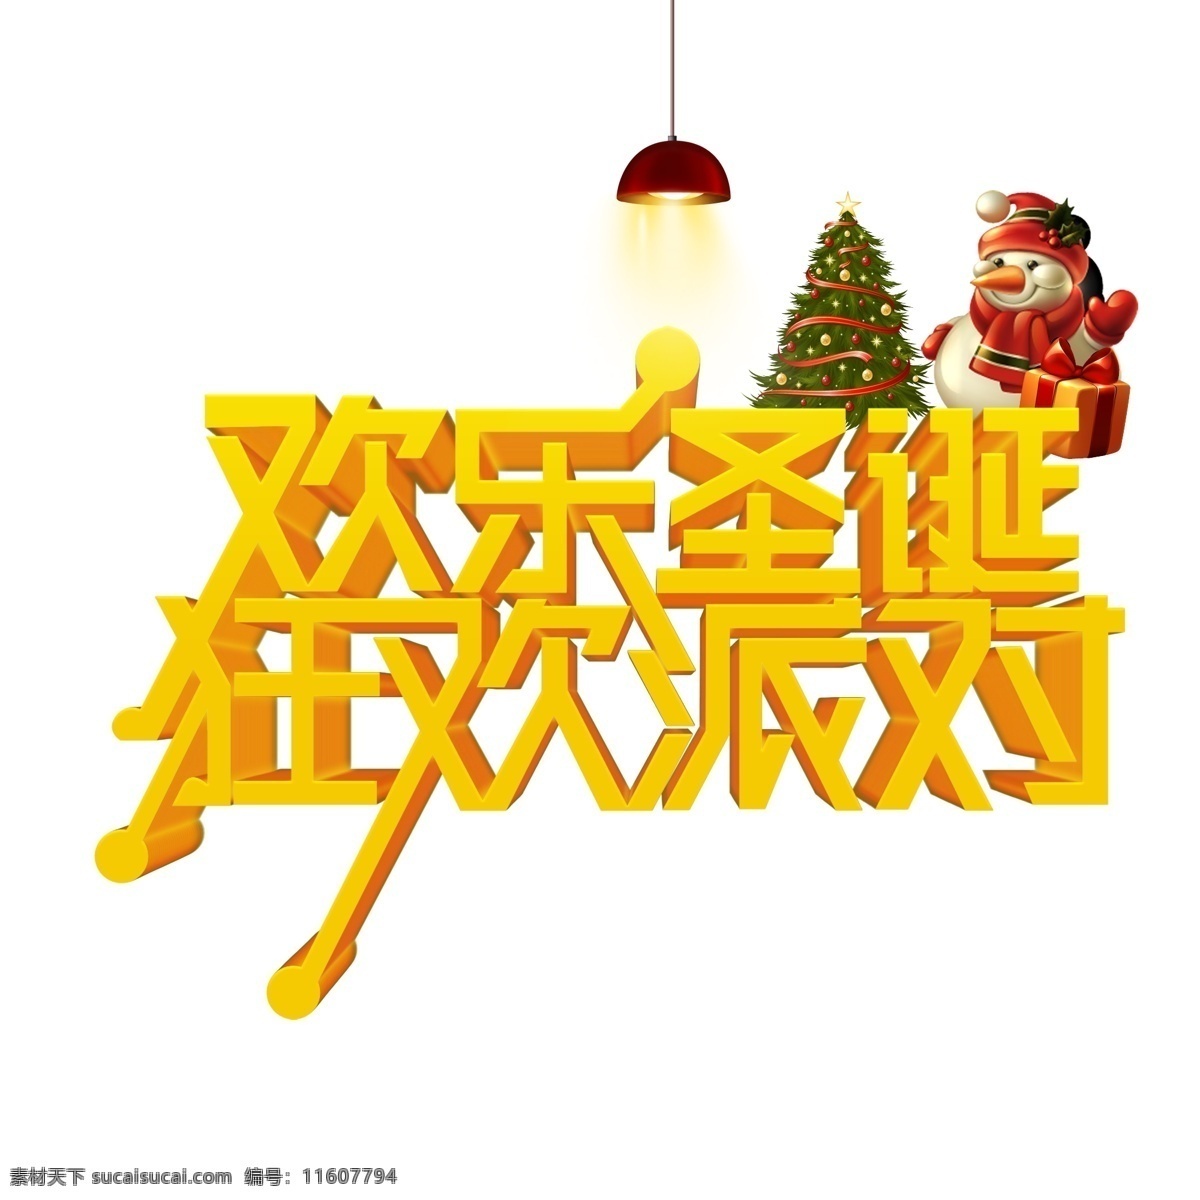 圣诞 促销 欢乐圣诞 狂欢 派对 艺术 字体 元素 圣诞促销 字体元素 艺术字 艺术字体元素